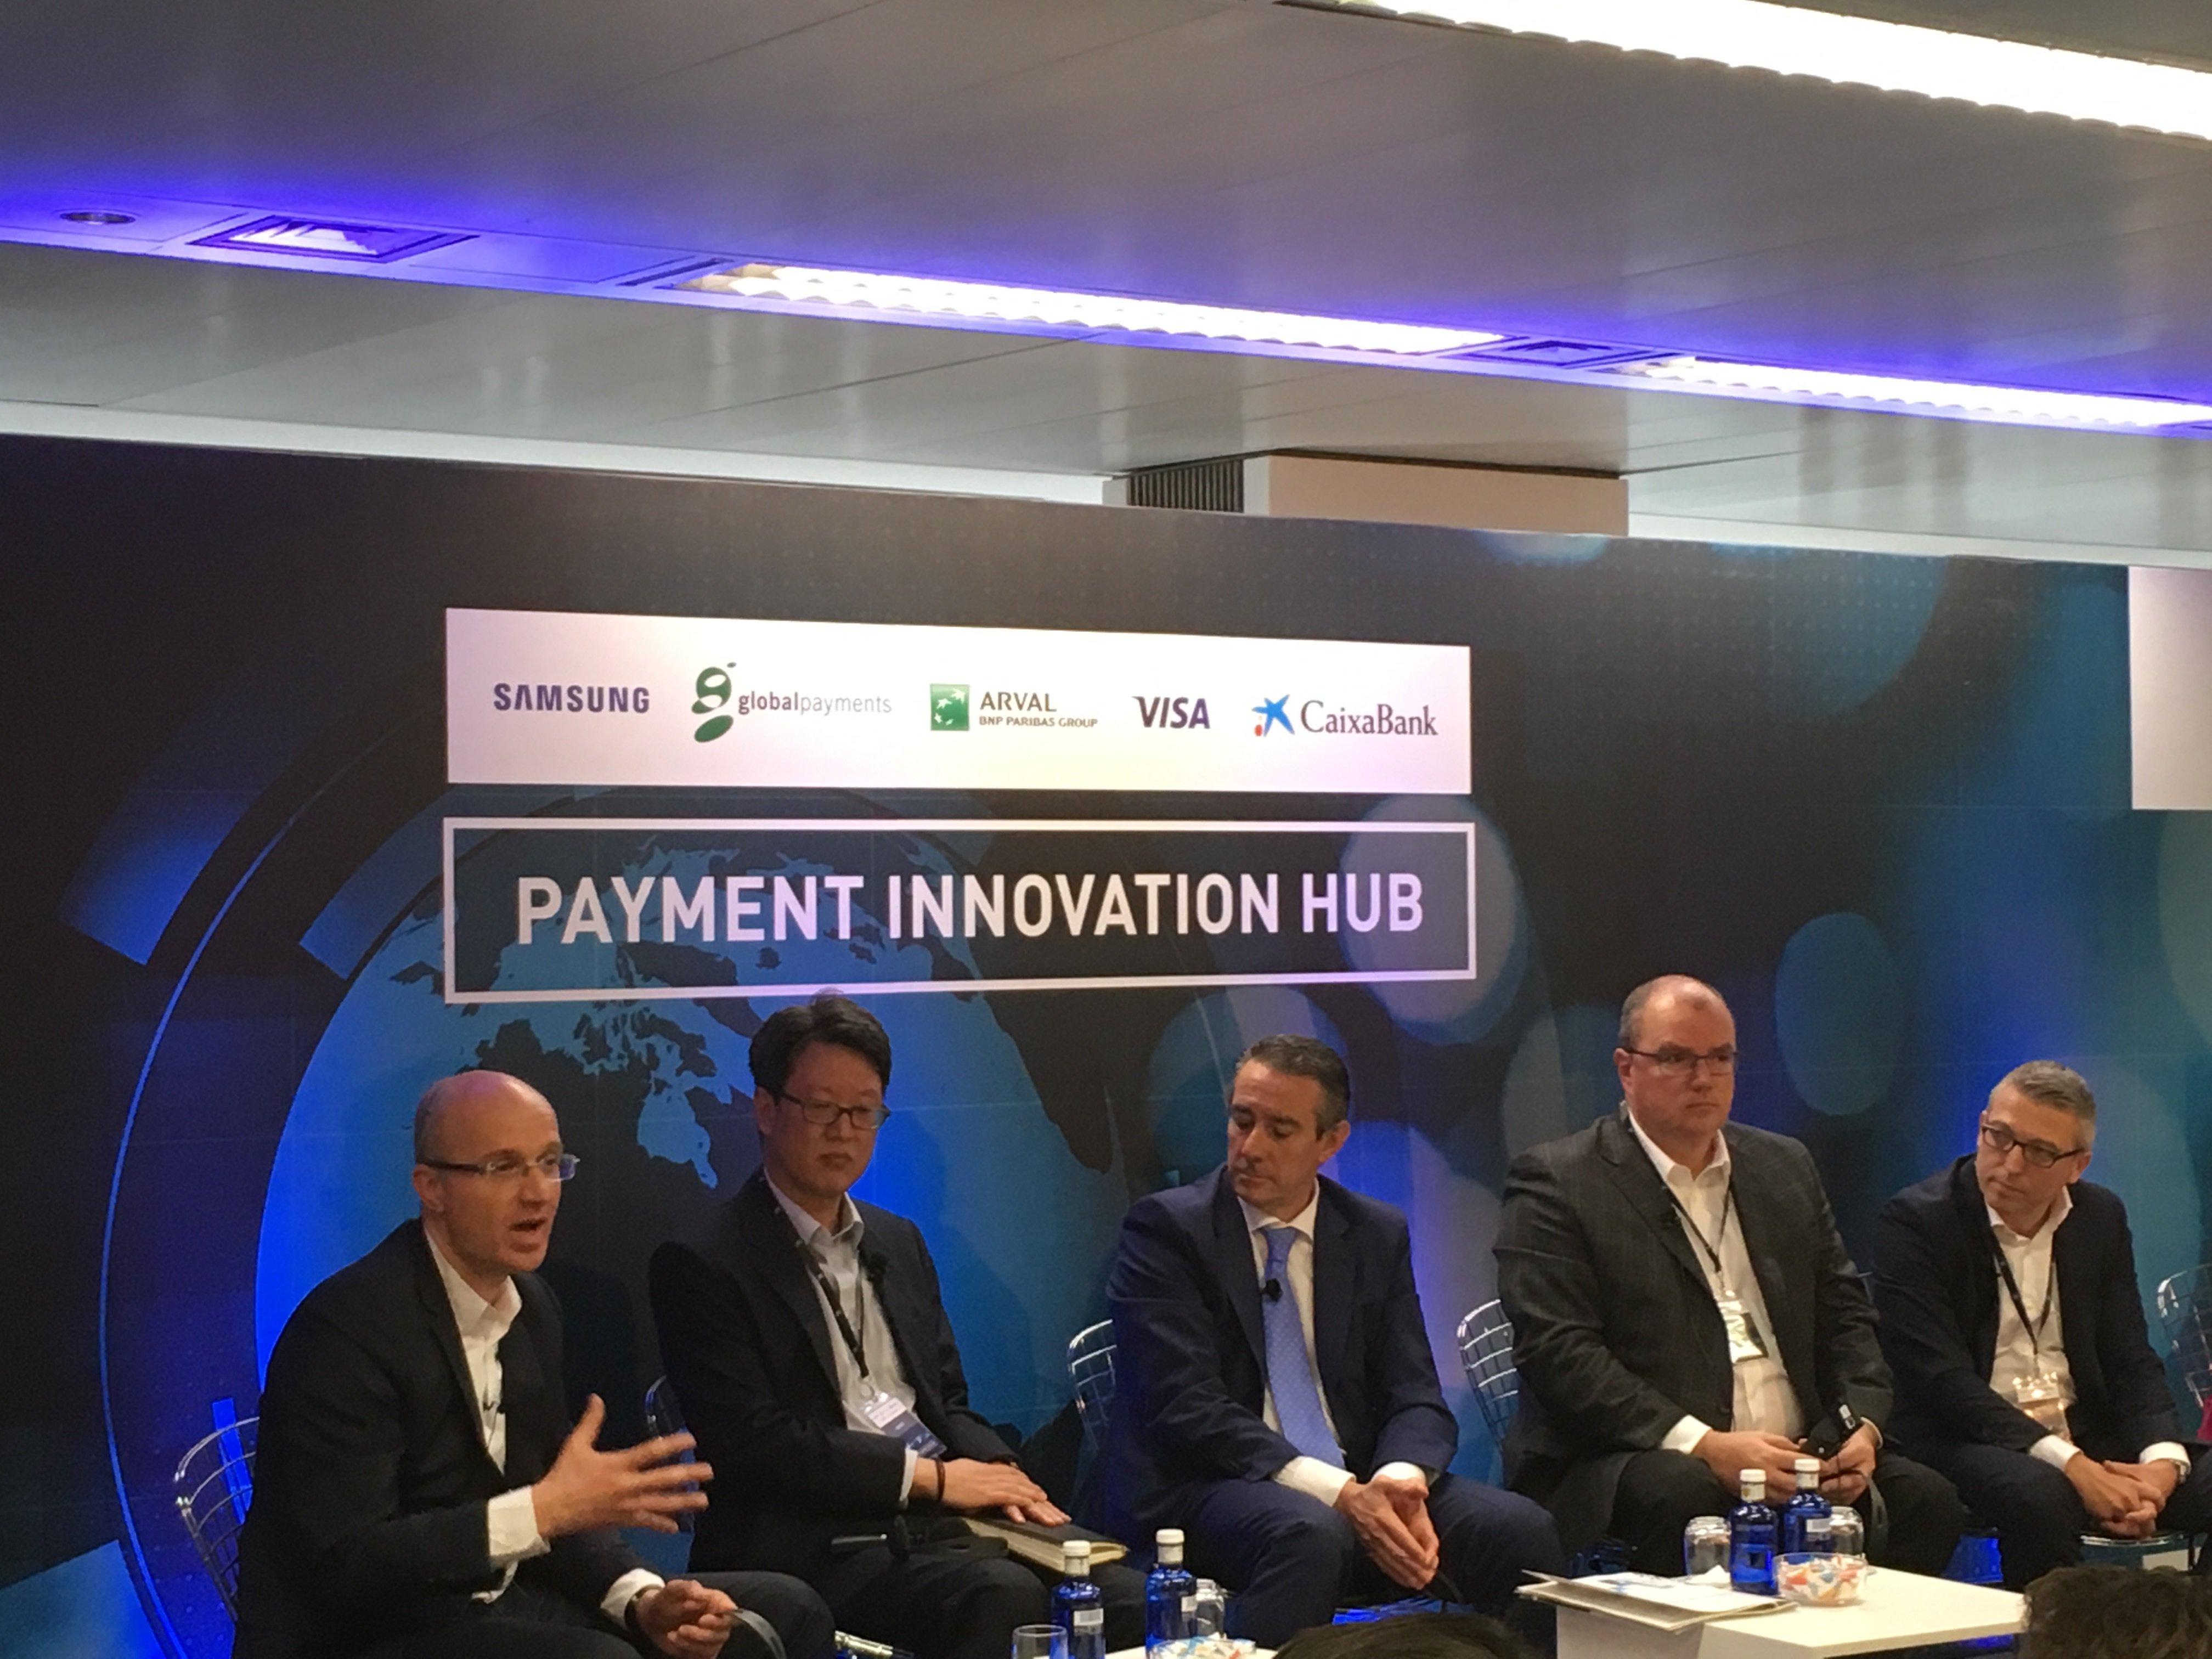 El 'hub' de CaixaBank para innovar en pagos se ubicará en el 'Pier 01'